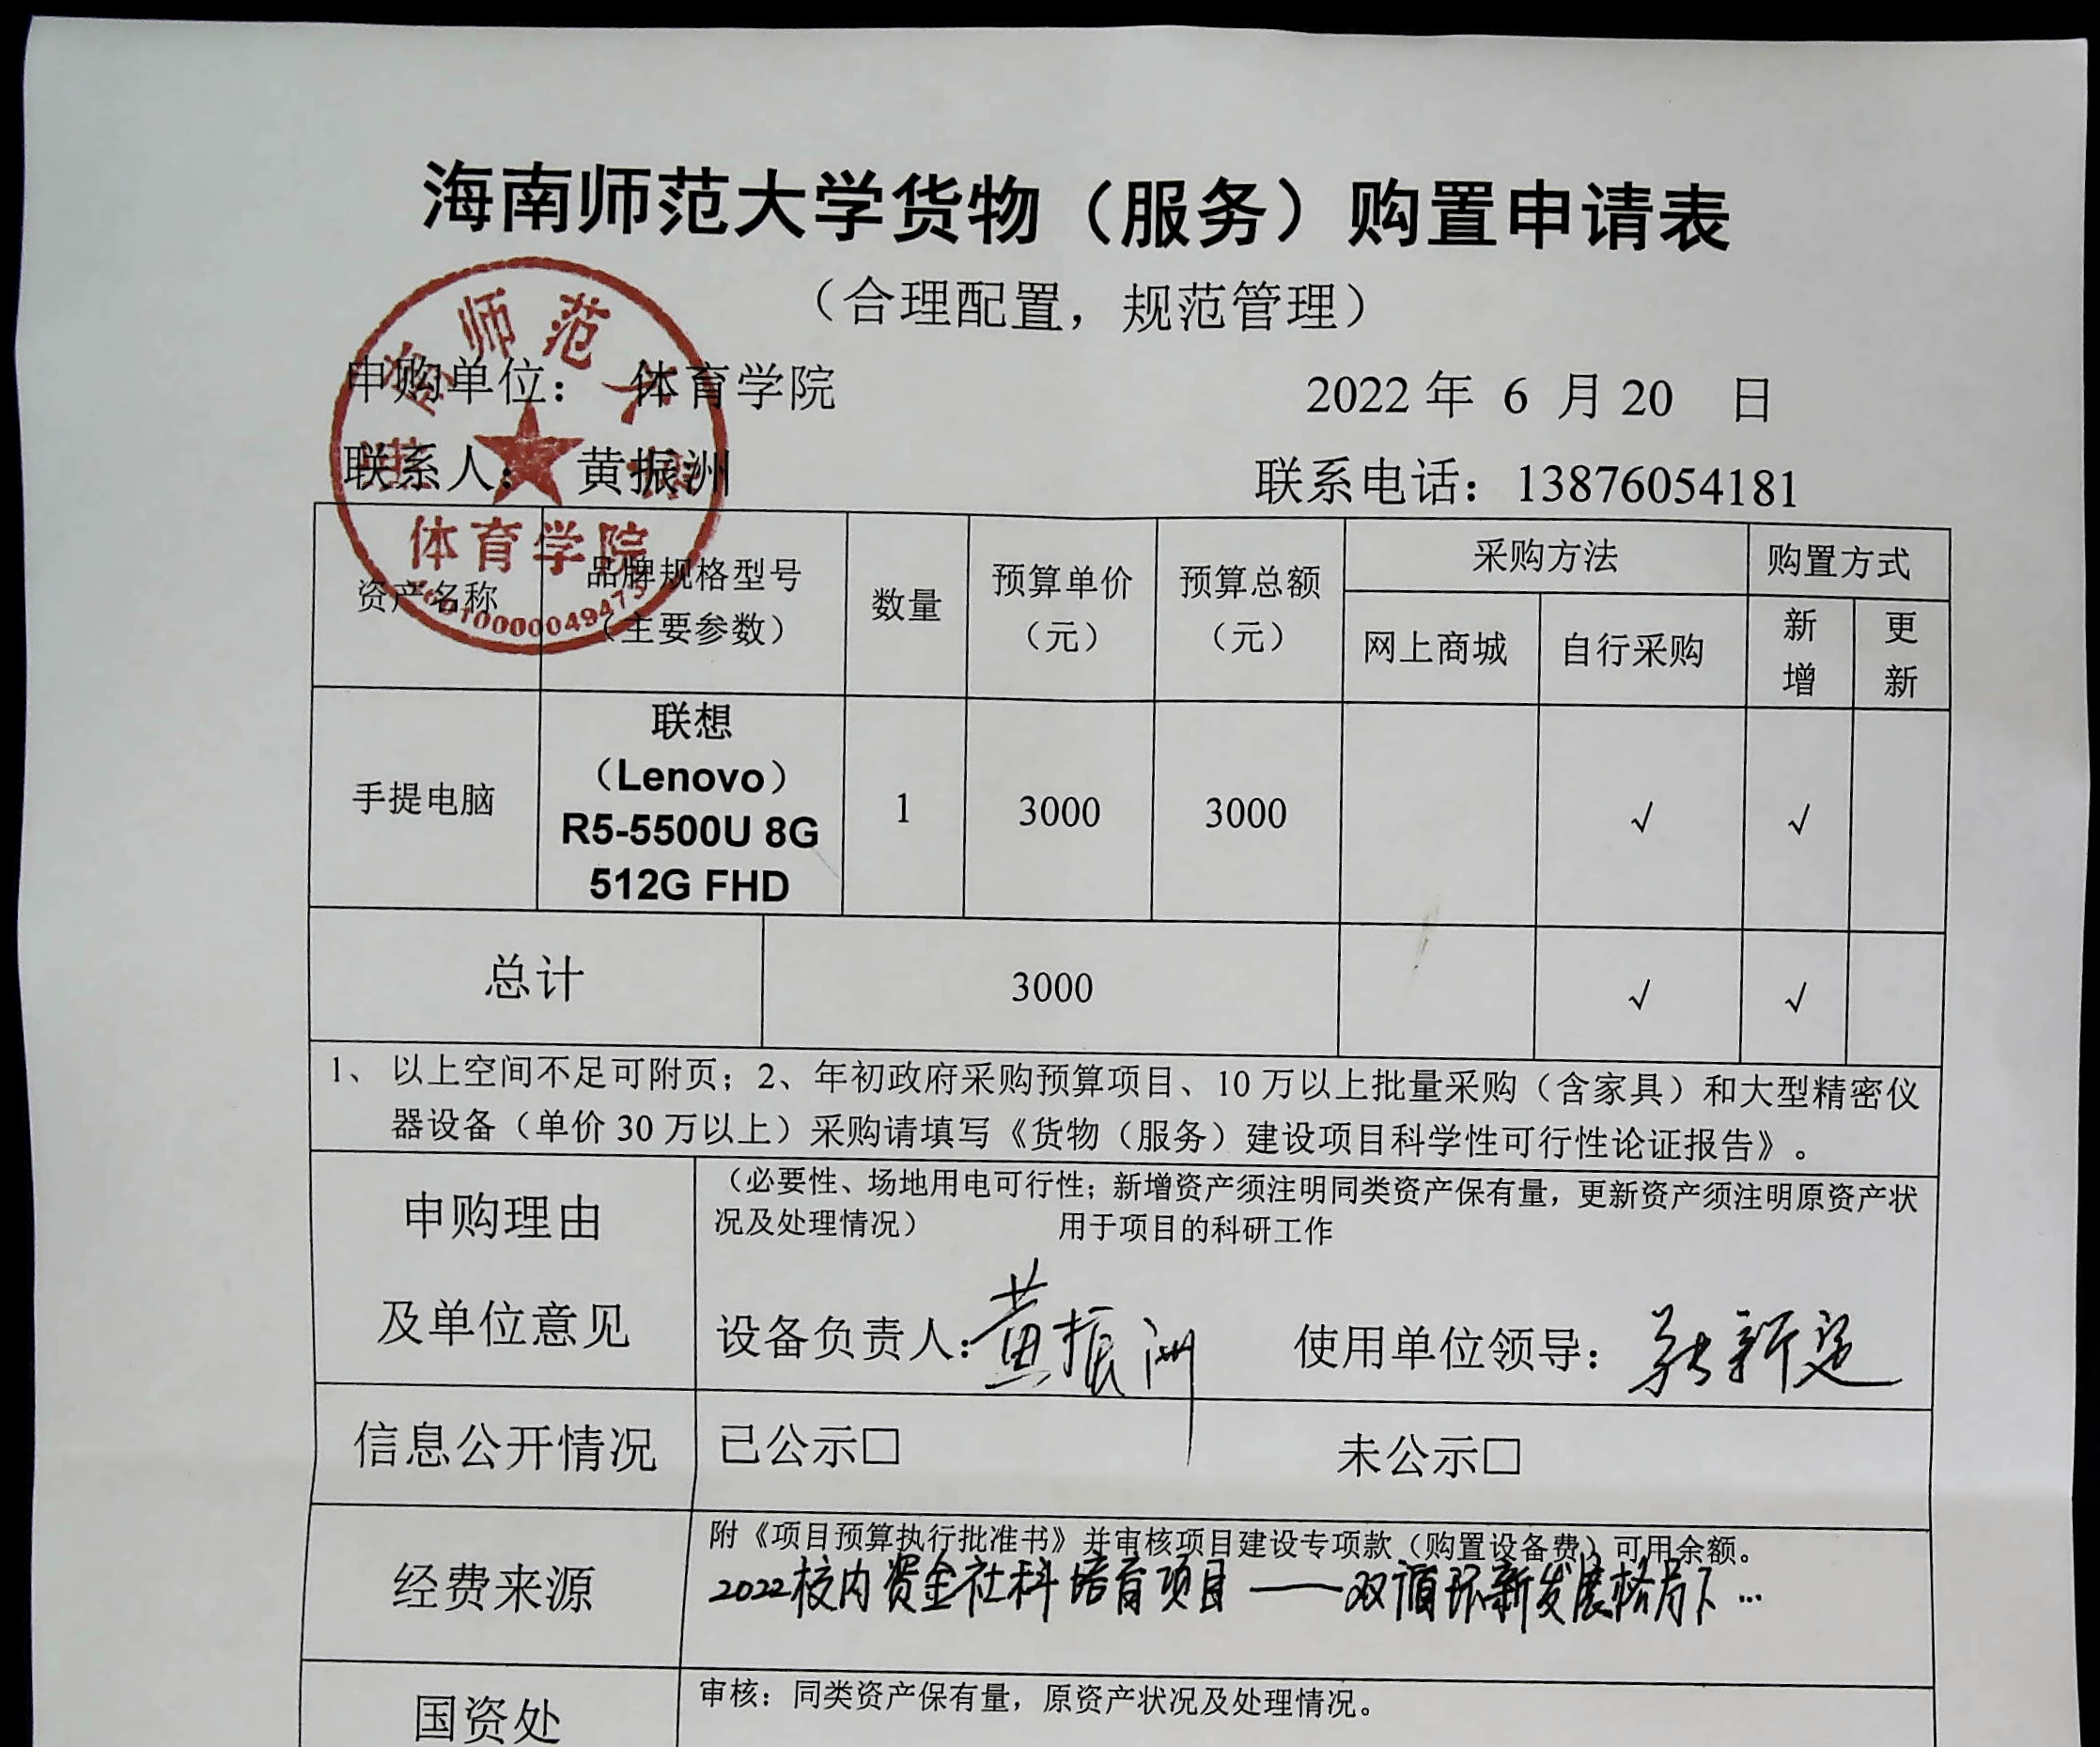 海南师范大学货物（服务）购置申请表6.26